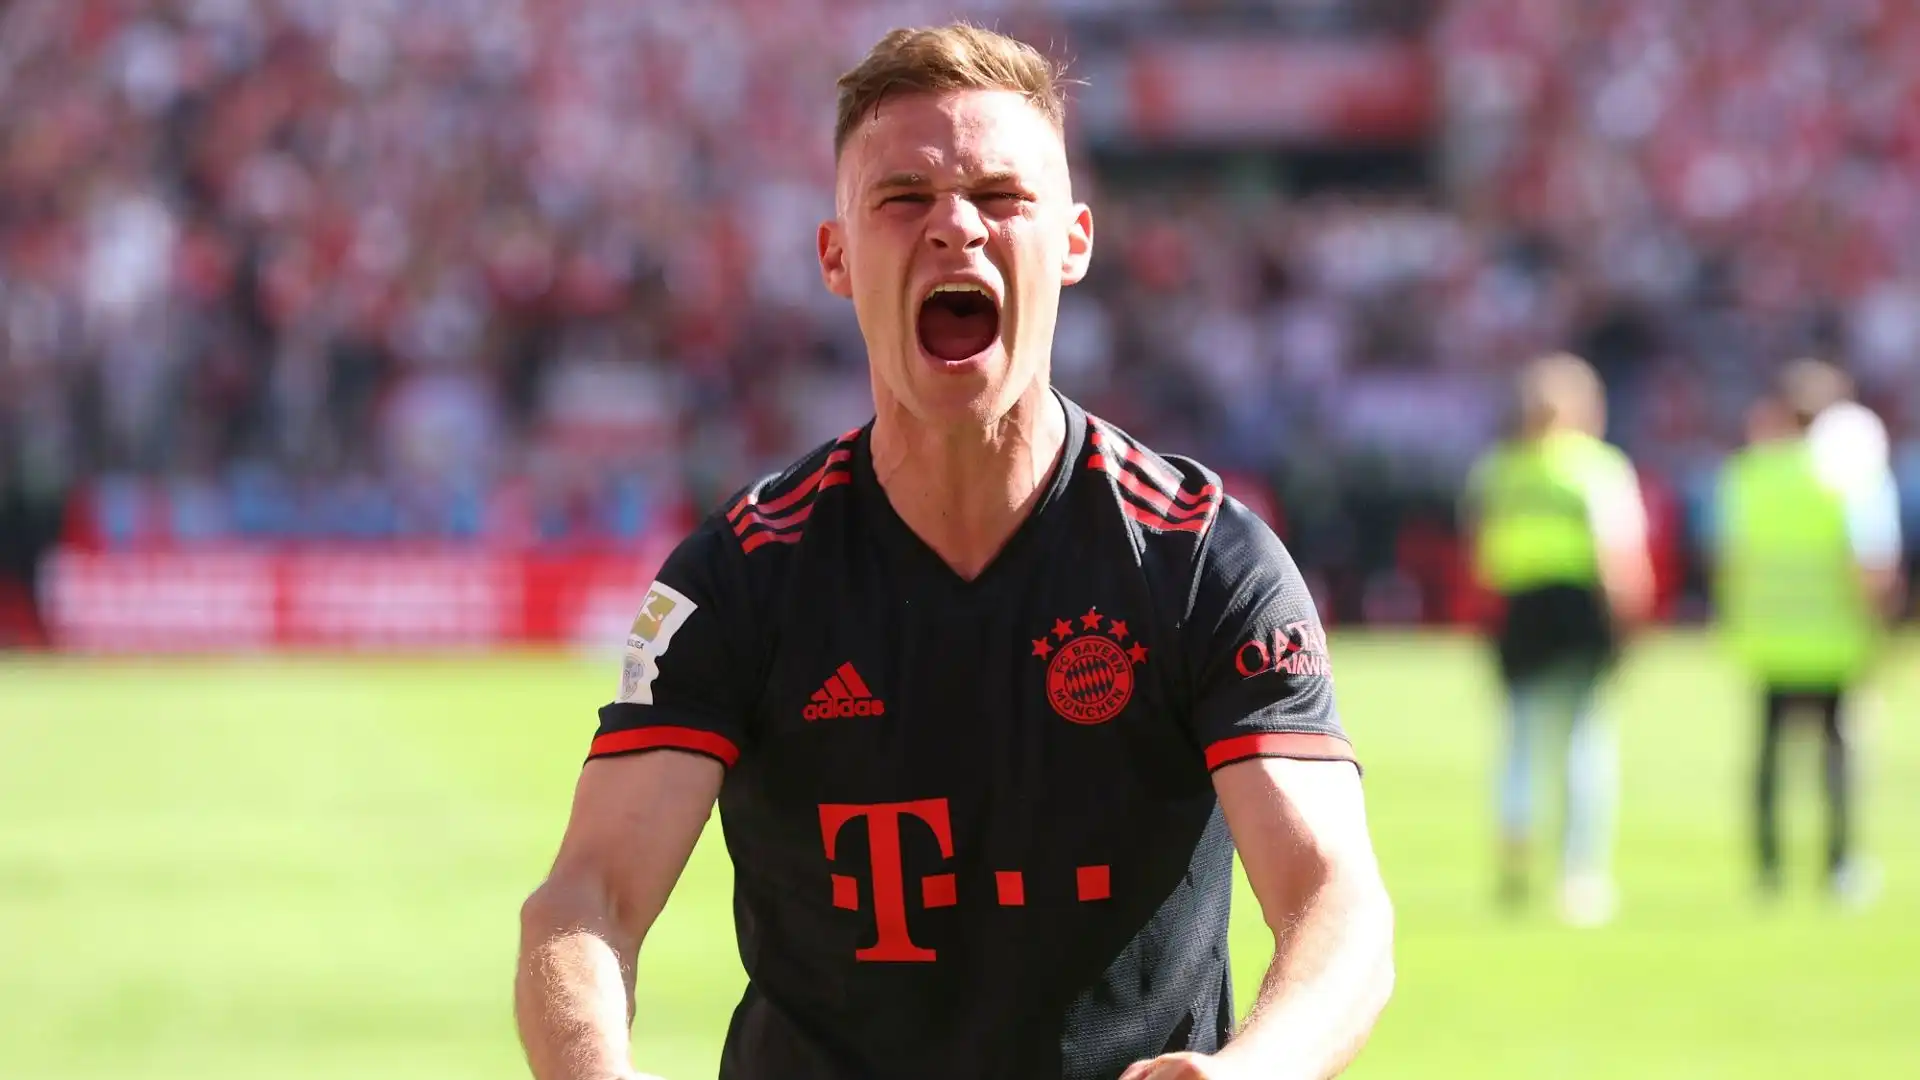 Il Bayern ha battuto per 2-1 il Colonia, ed ha vinto il titolo grazie al contemporaneo pareggio del Borussia Dortmund in casa con il Mainz